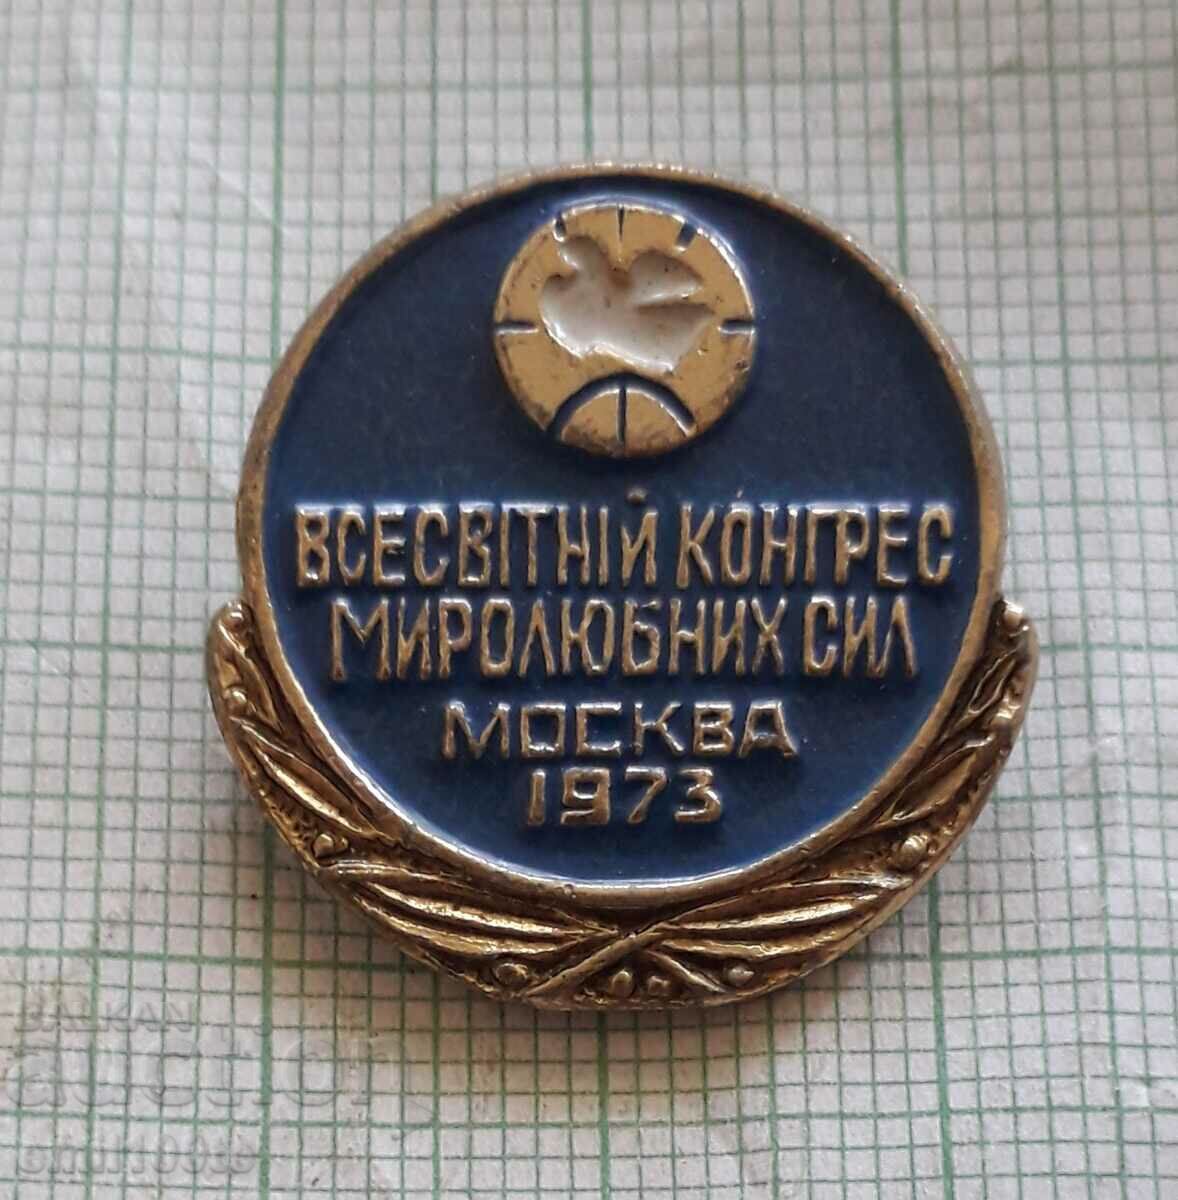 Σήμα - Παγκόσμιο Συνέδριο Ειρηνευτικών Δυνάμεων Μόσχα 1973